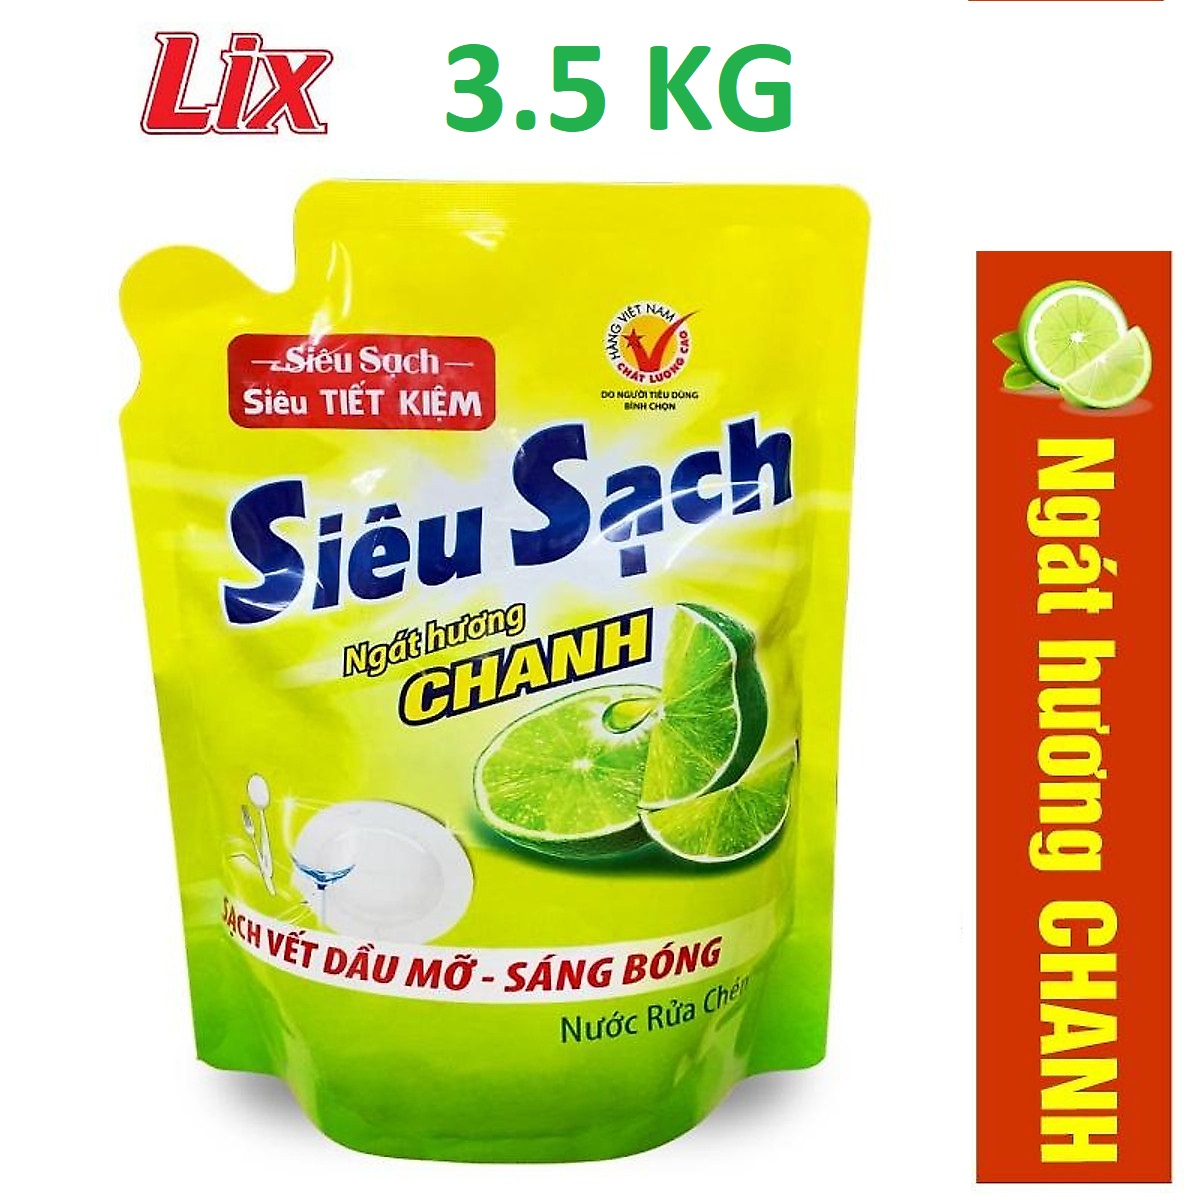 Nước rửa chén LIX 3.5KG Hương Chanh siêu sạch loại Túi sạch vết bẩn dầu mỡ